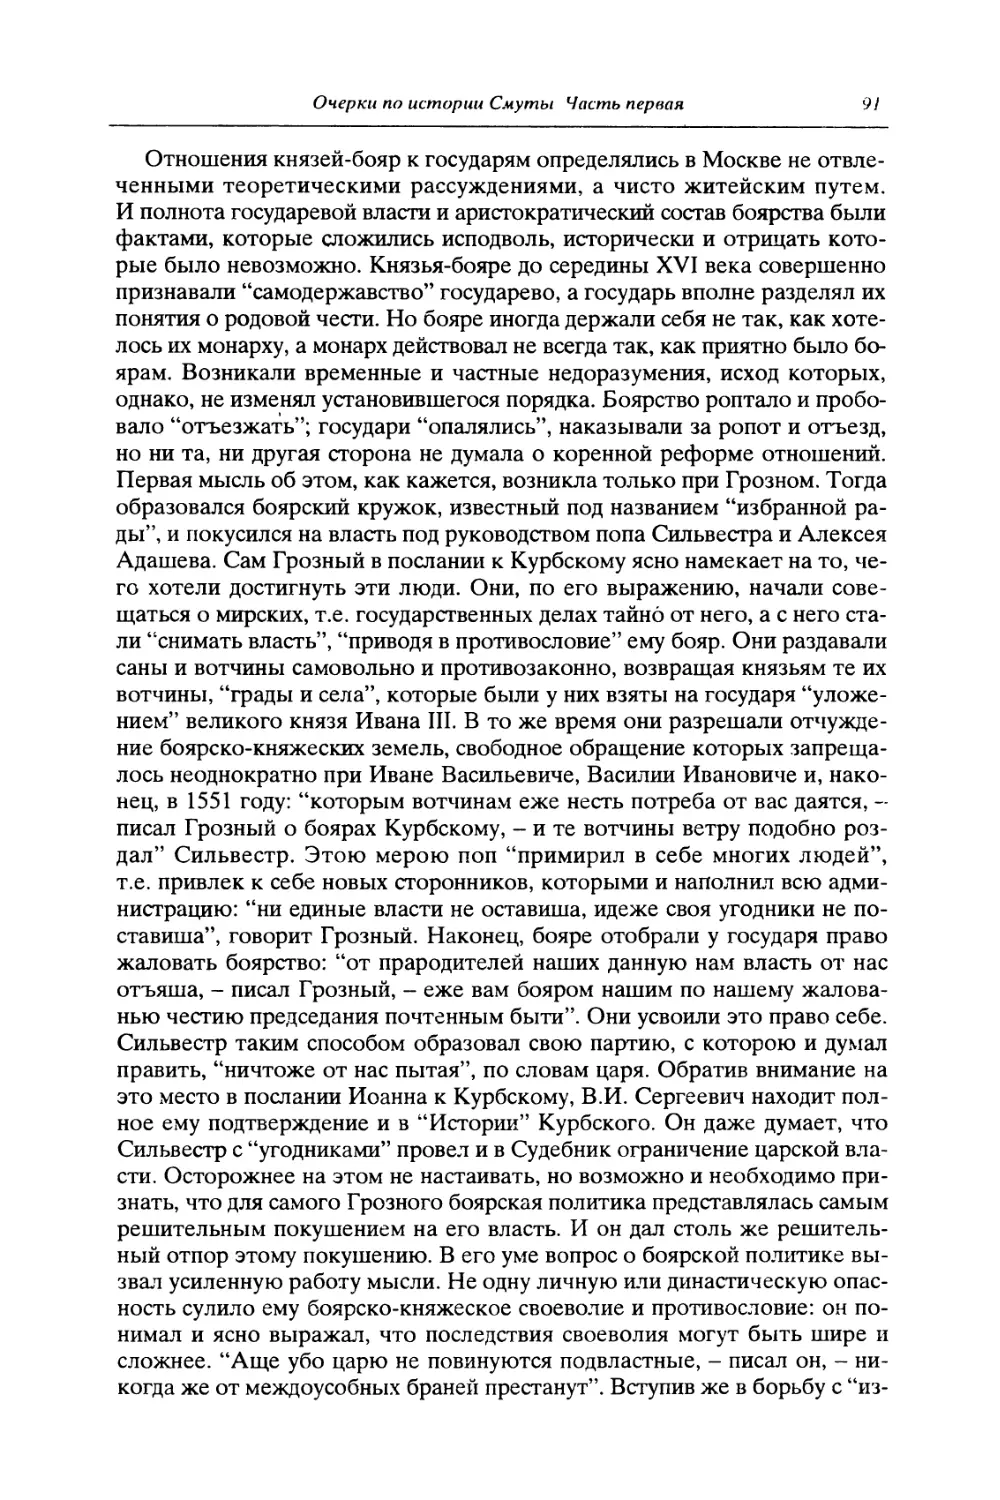 III. Опричнина Ивана Горозного, как попытка политической реформы